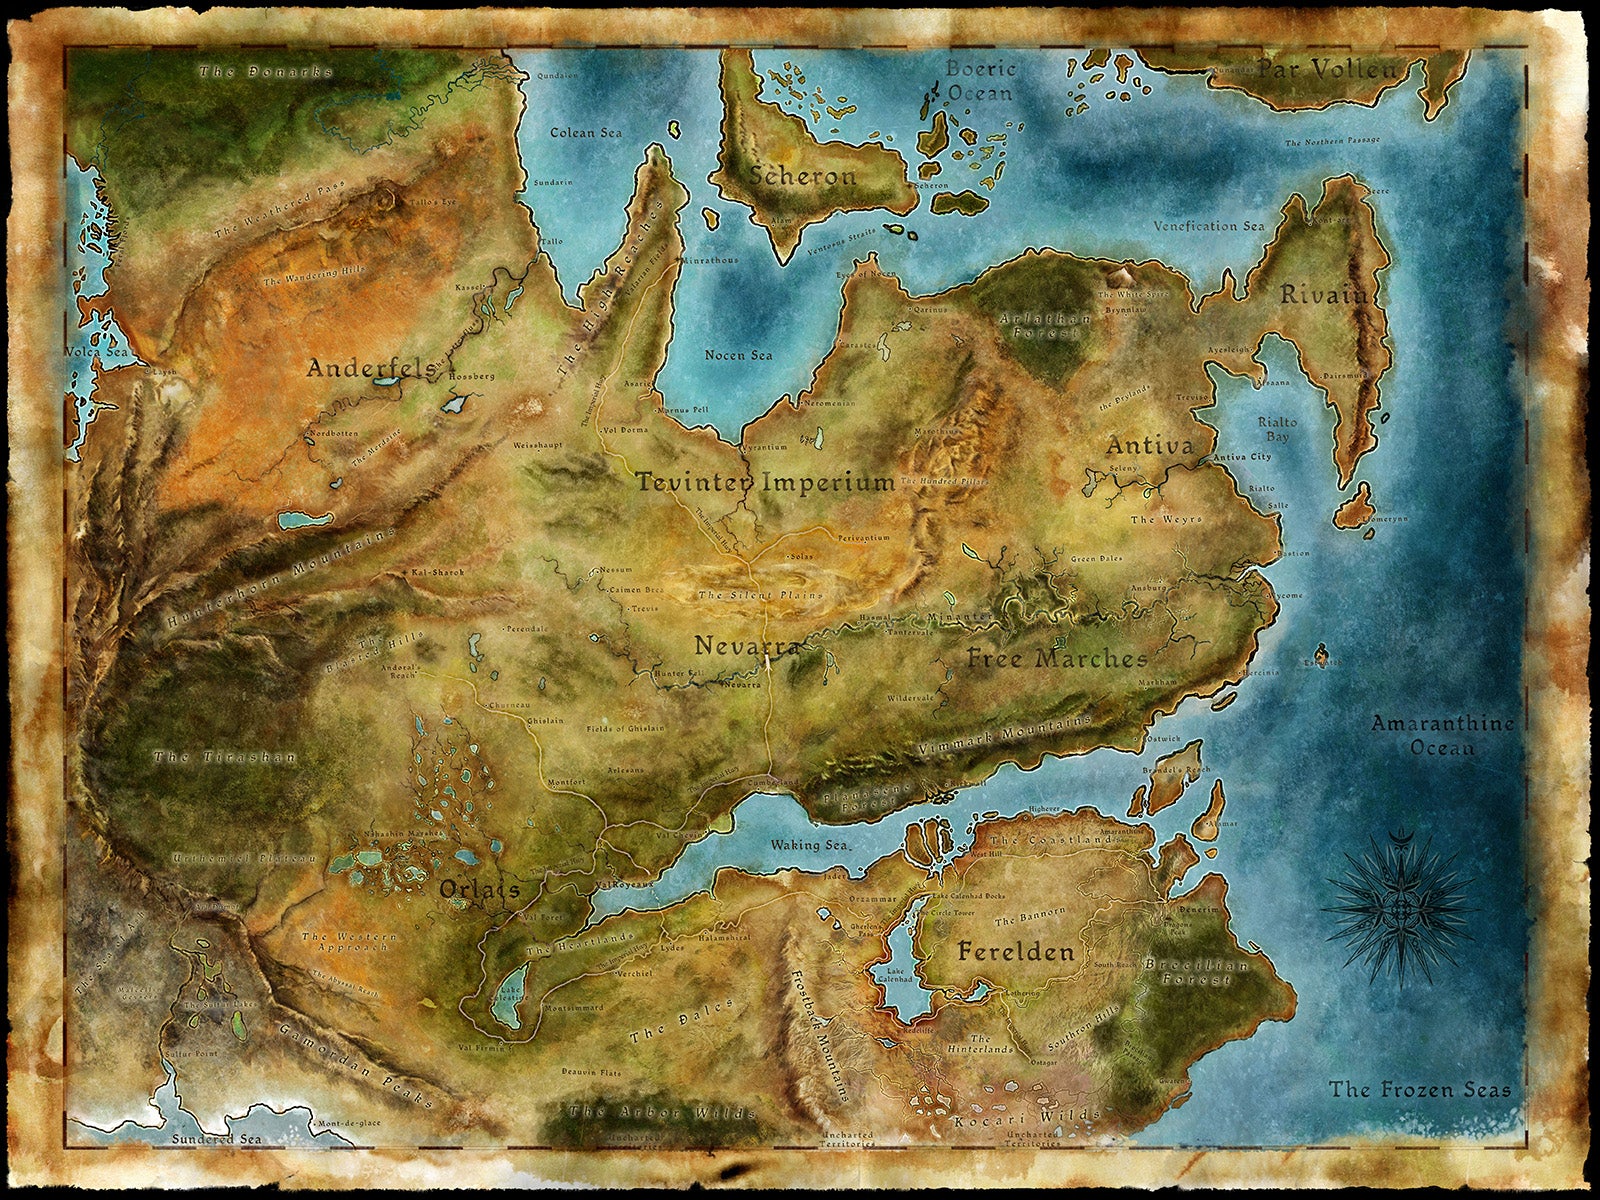 La mappa del mondo di Dragon Age, Thedas, resa più bella da BioWare. È disegnata come se avesse una geografia colorata reale.